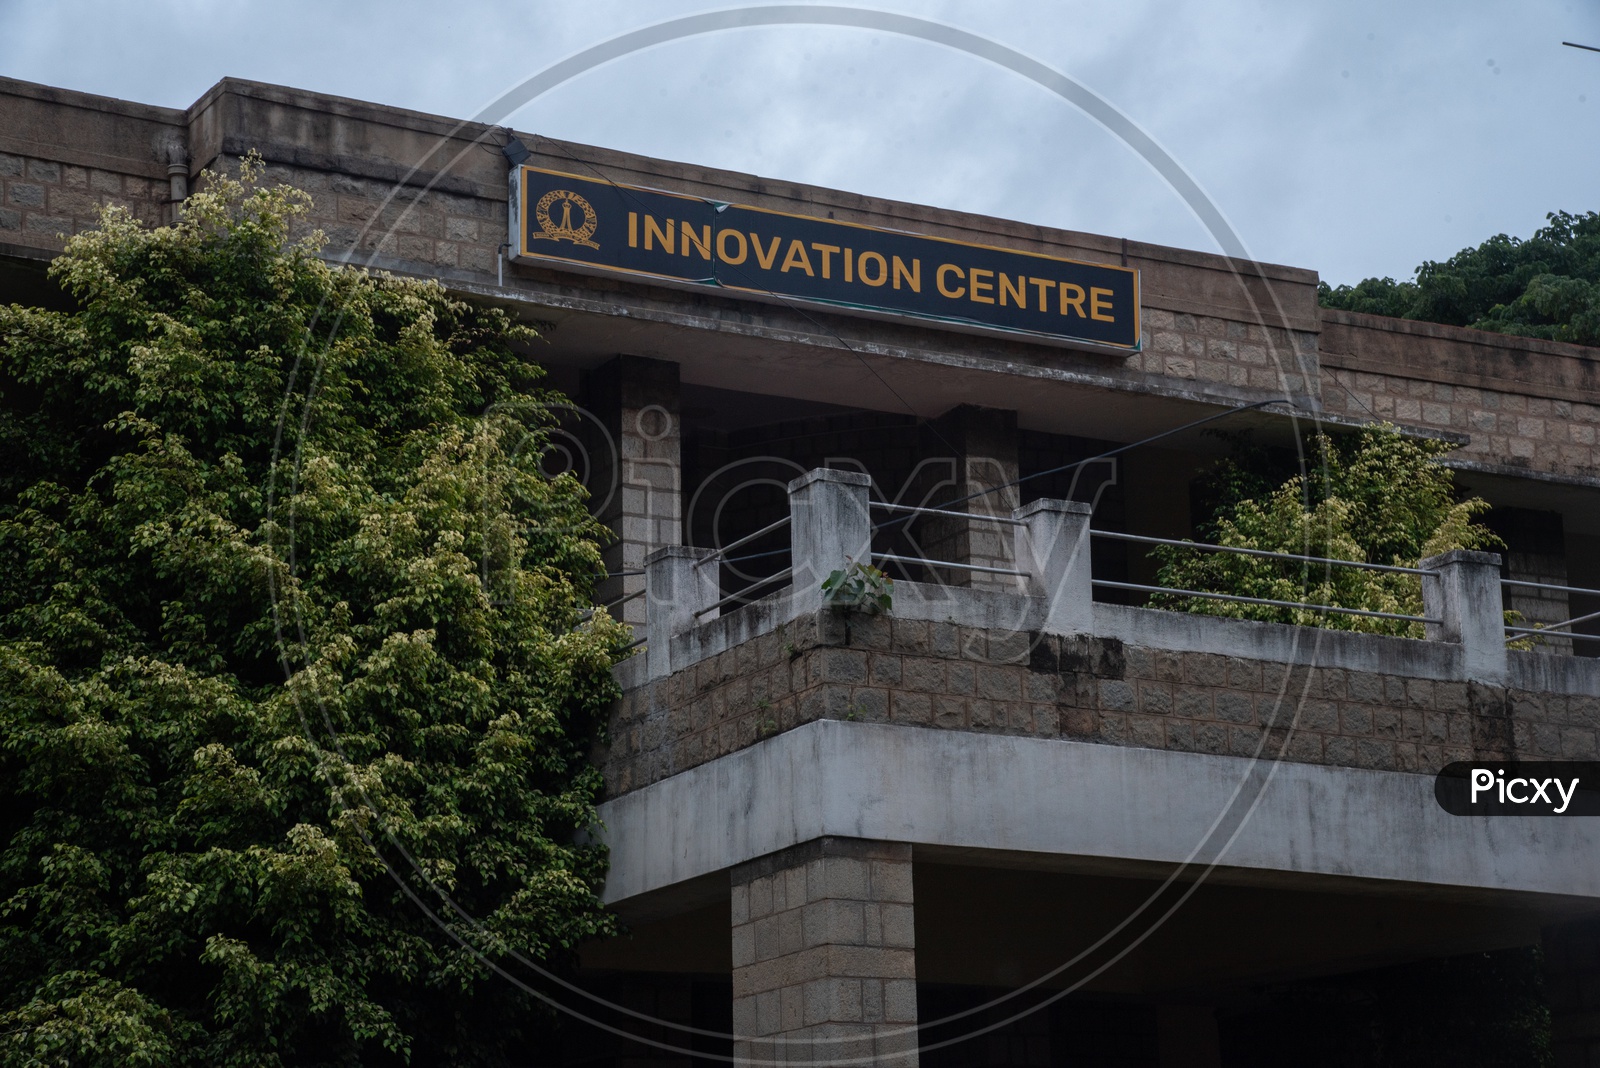 Innovation centre